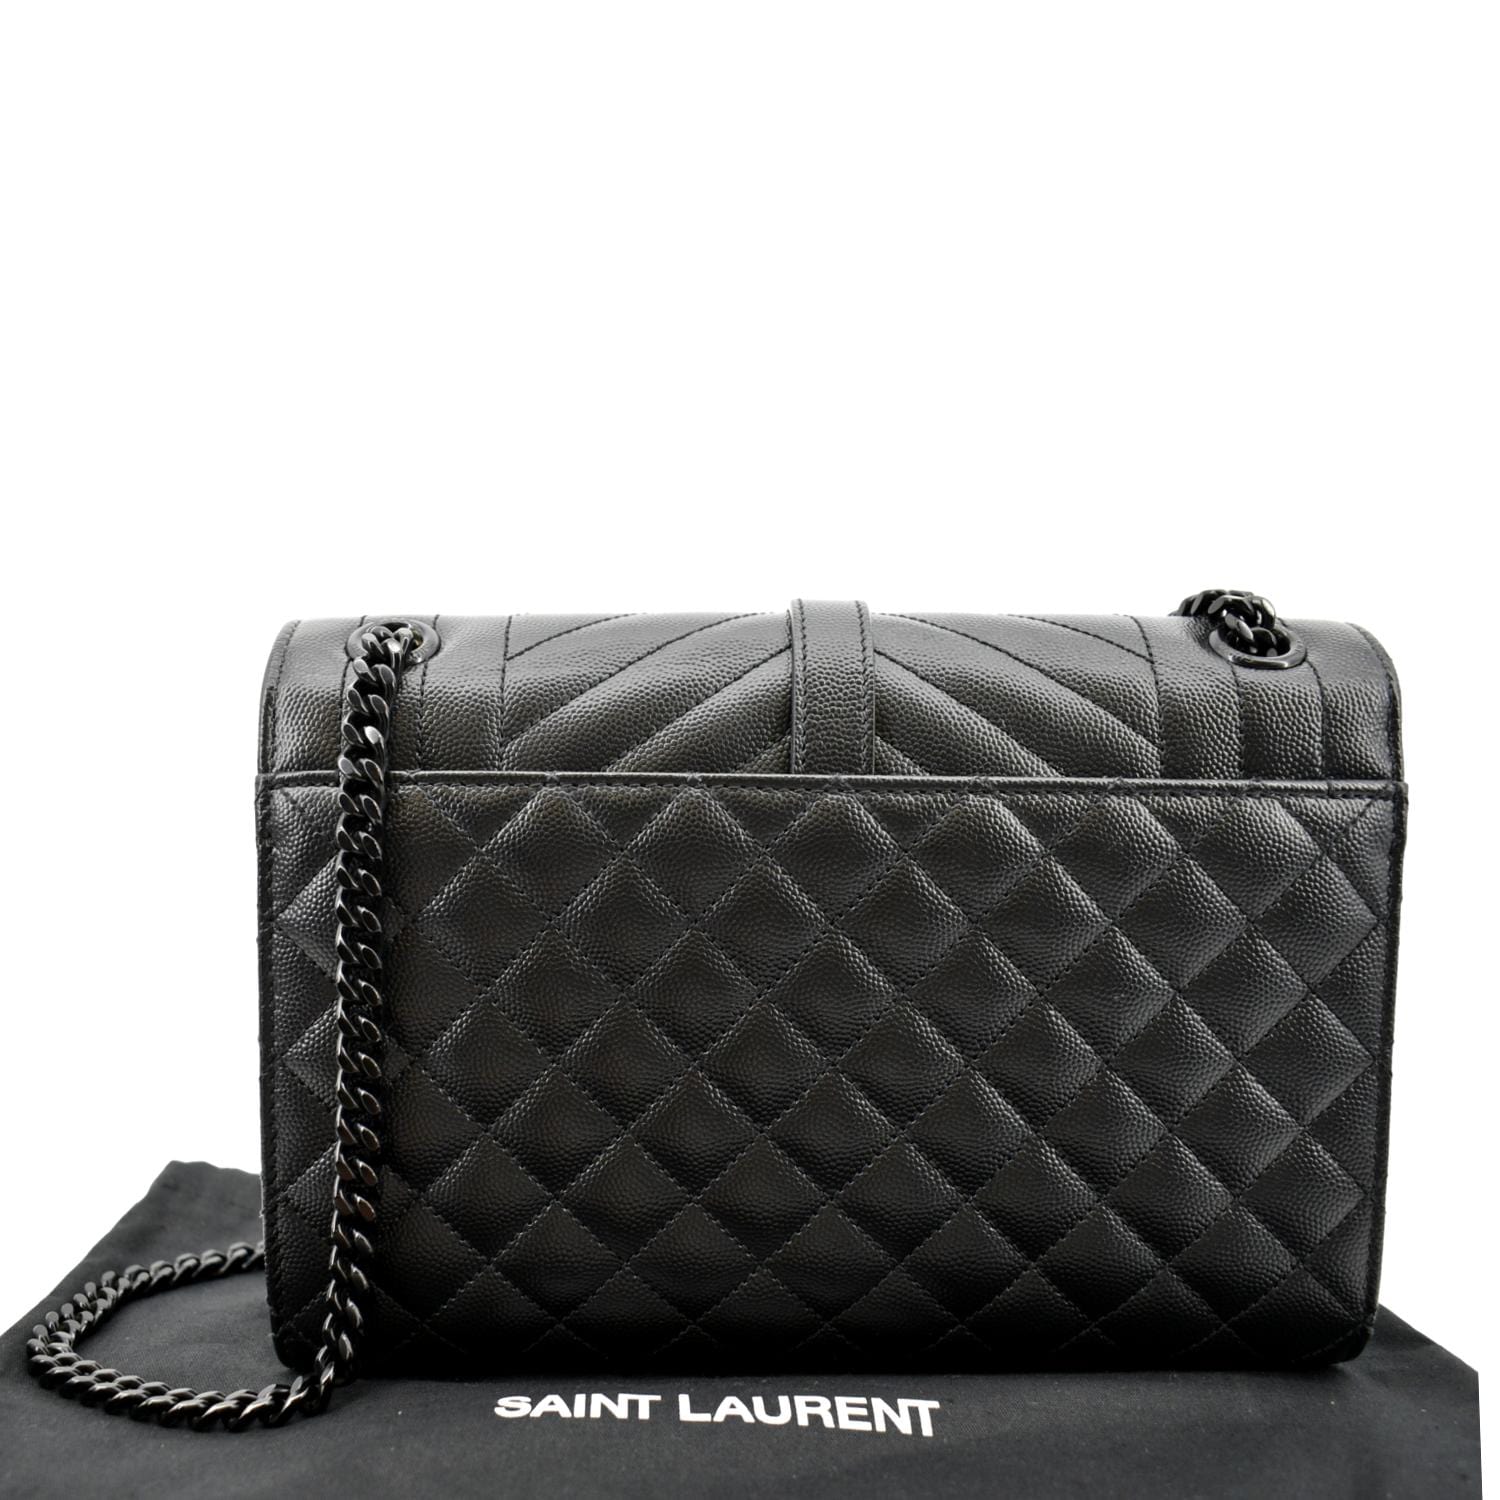 Saint Laurent Small Tri-Quilt Envelope Chain Bag